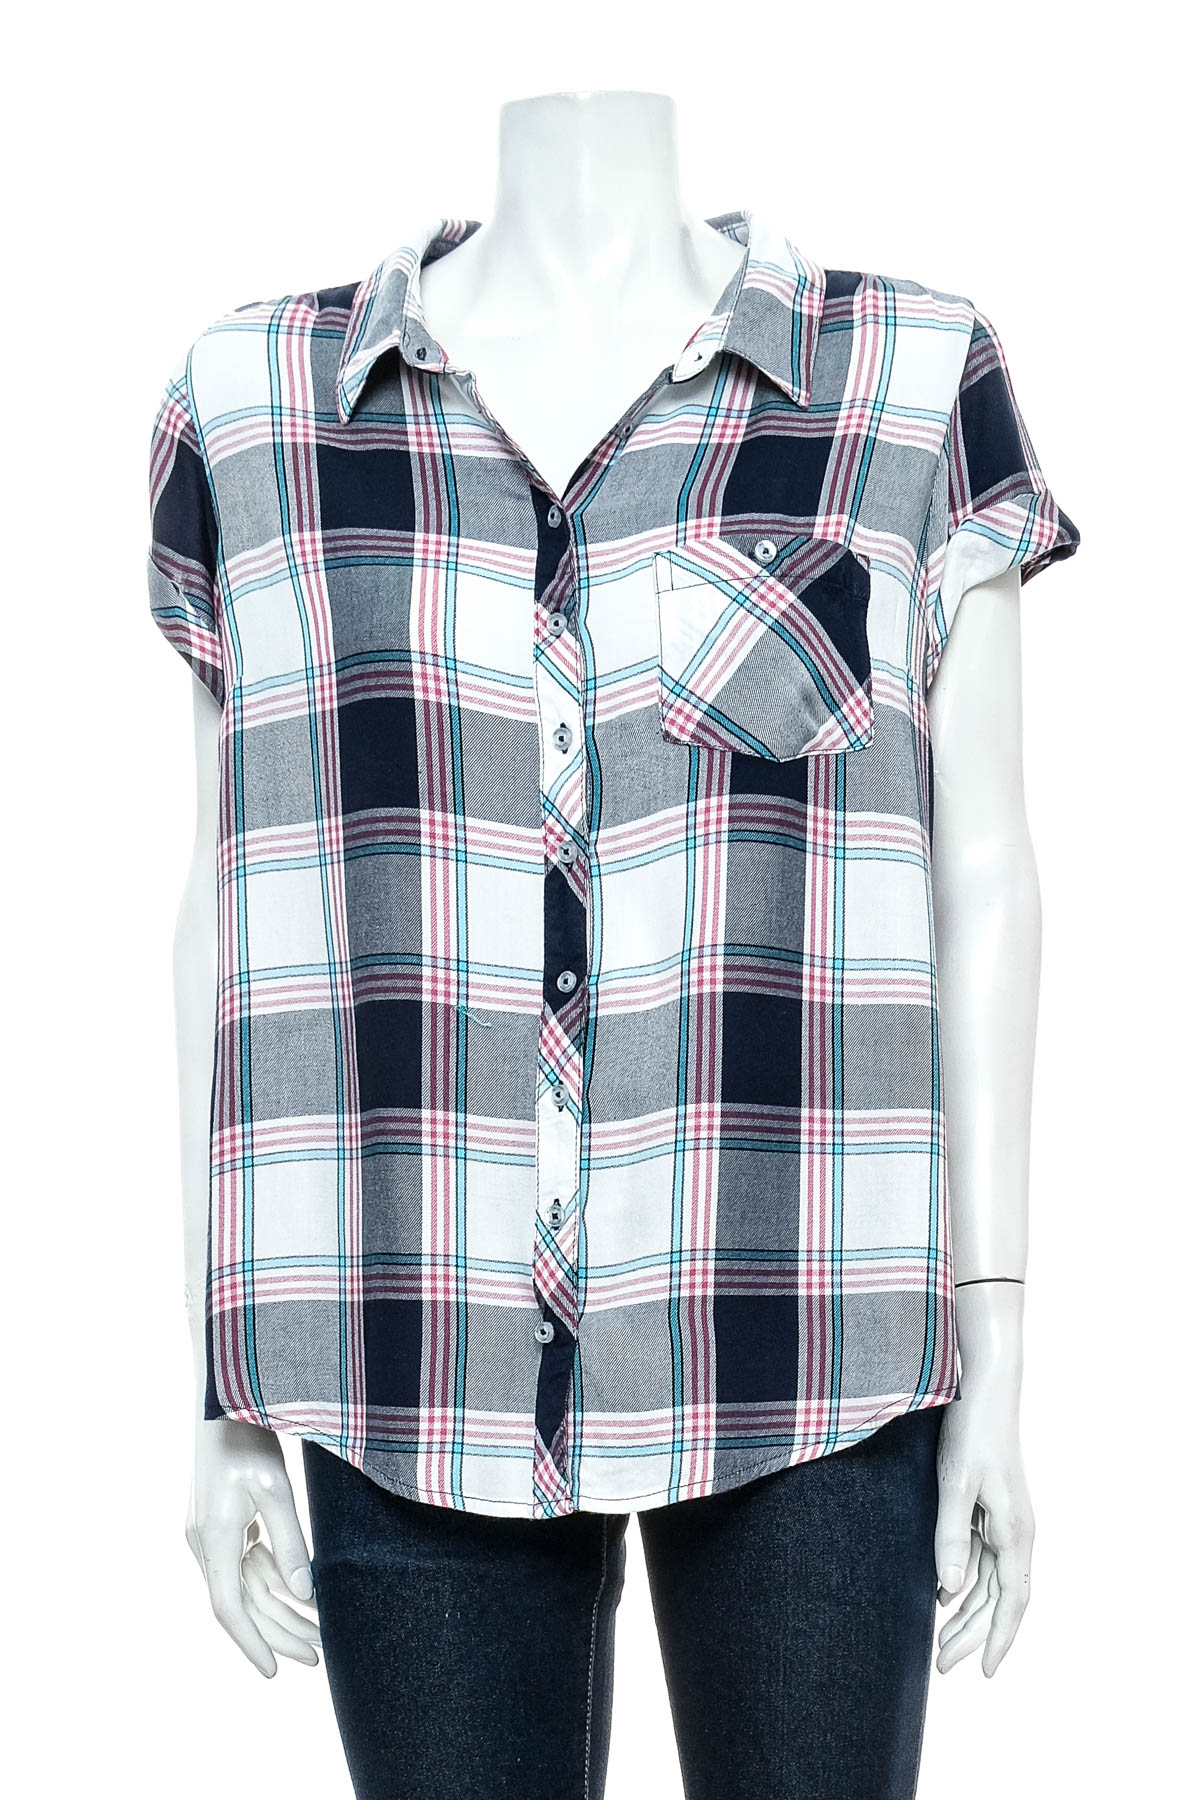 Γυναικείο πουκάμισο - Multiblu - 0